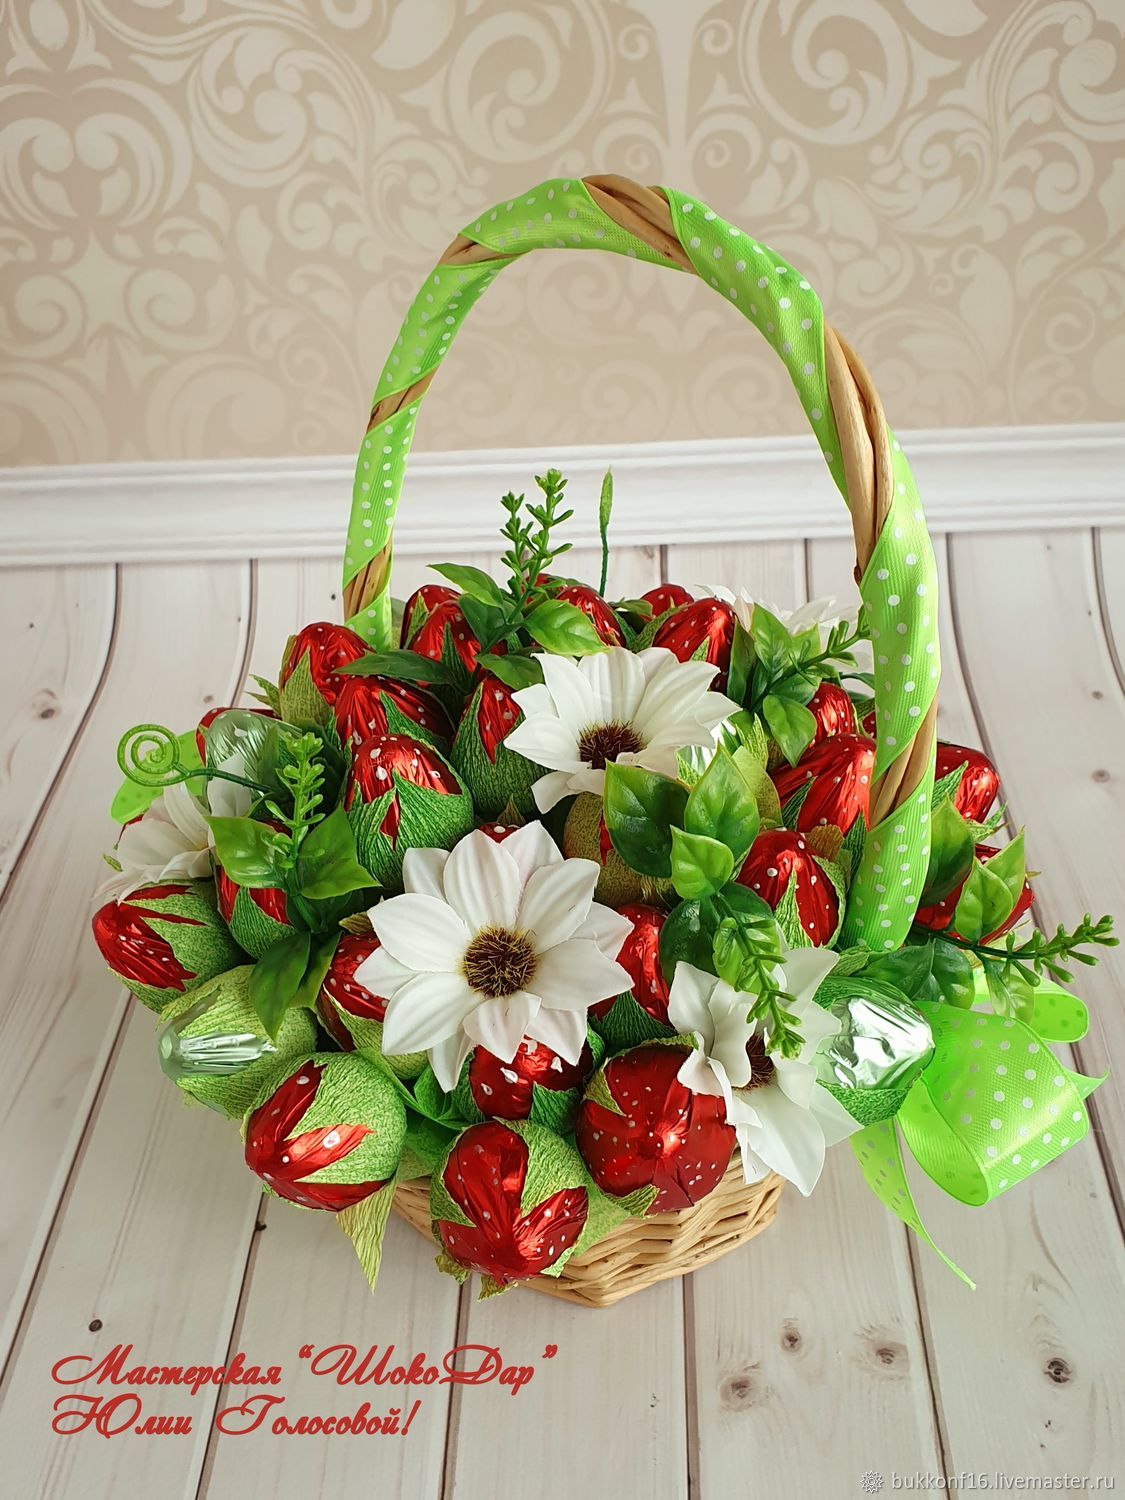 Букеты из конфет в корзине купить в Москве - Доставка цветов